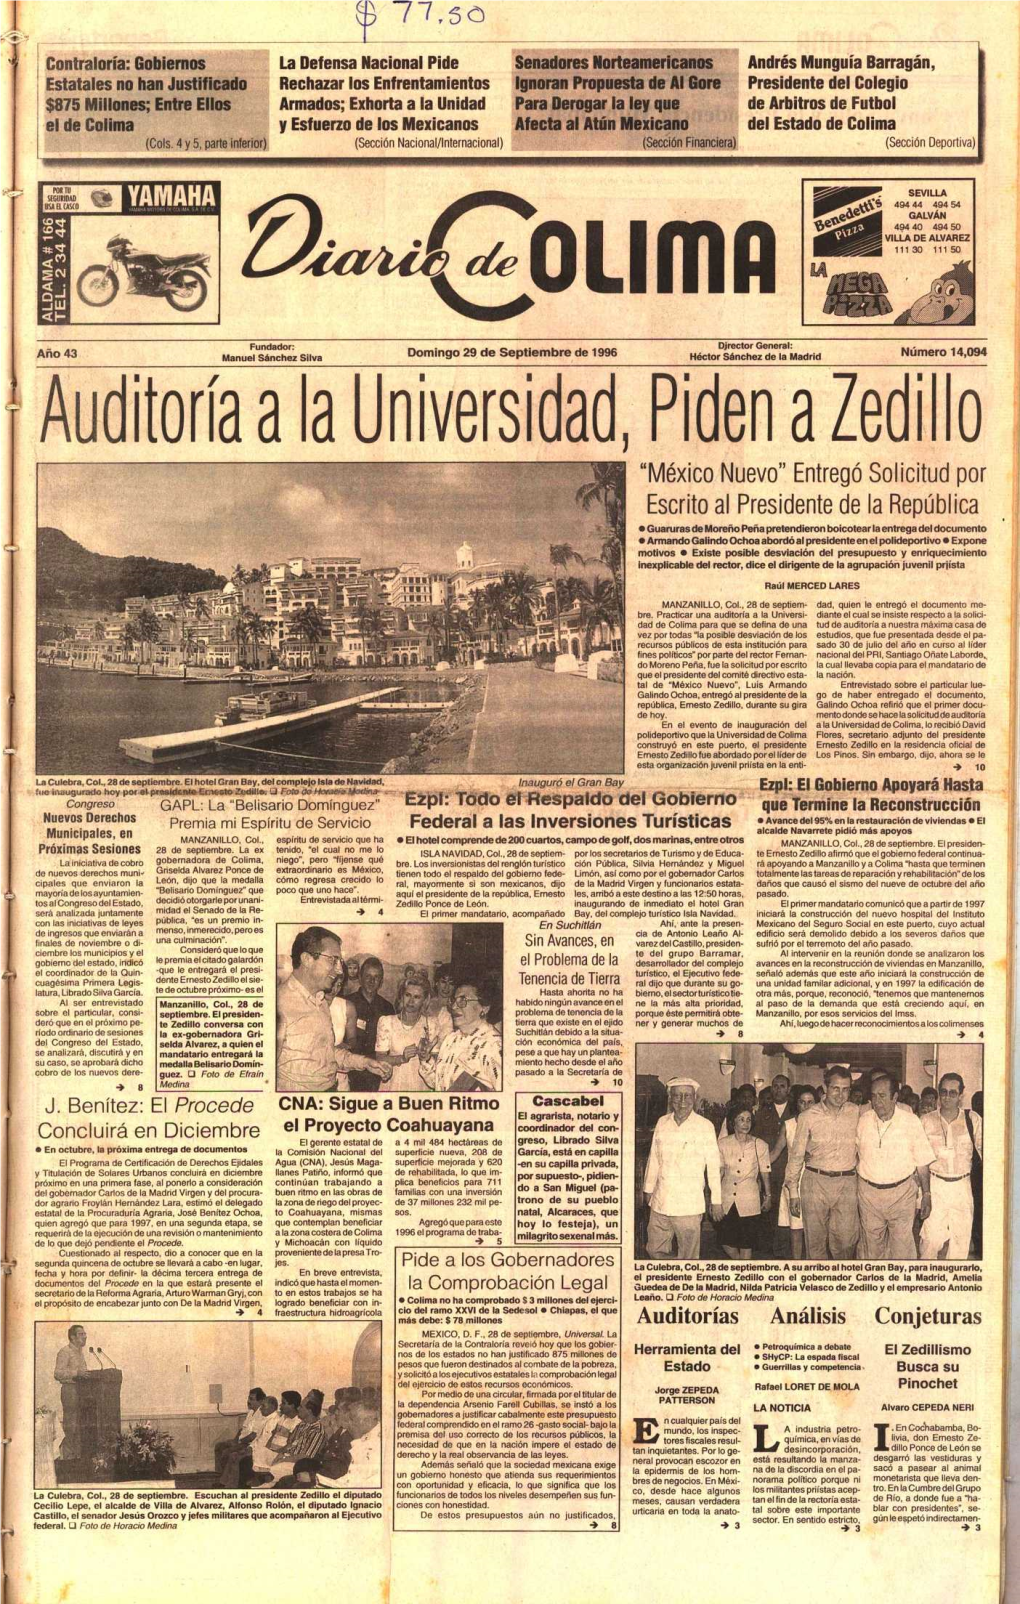 Auditoría Universidad, Piden Zedillo